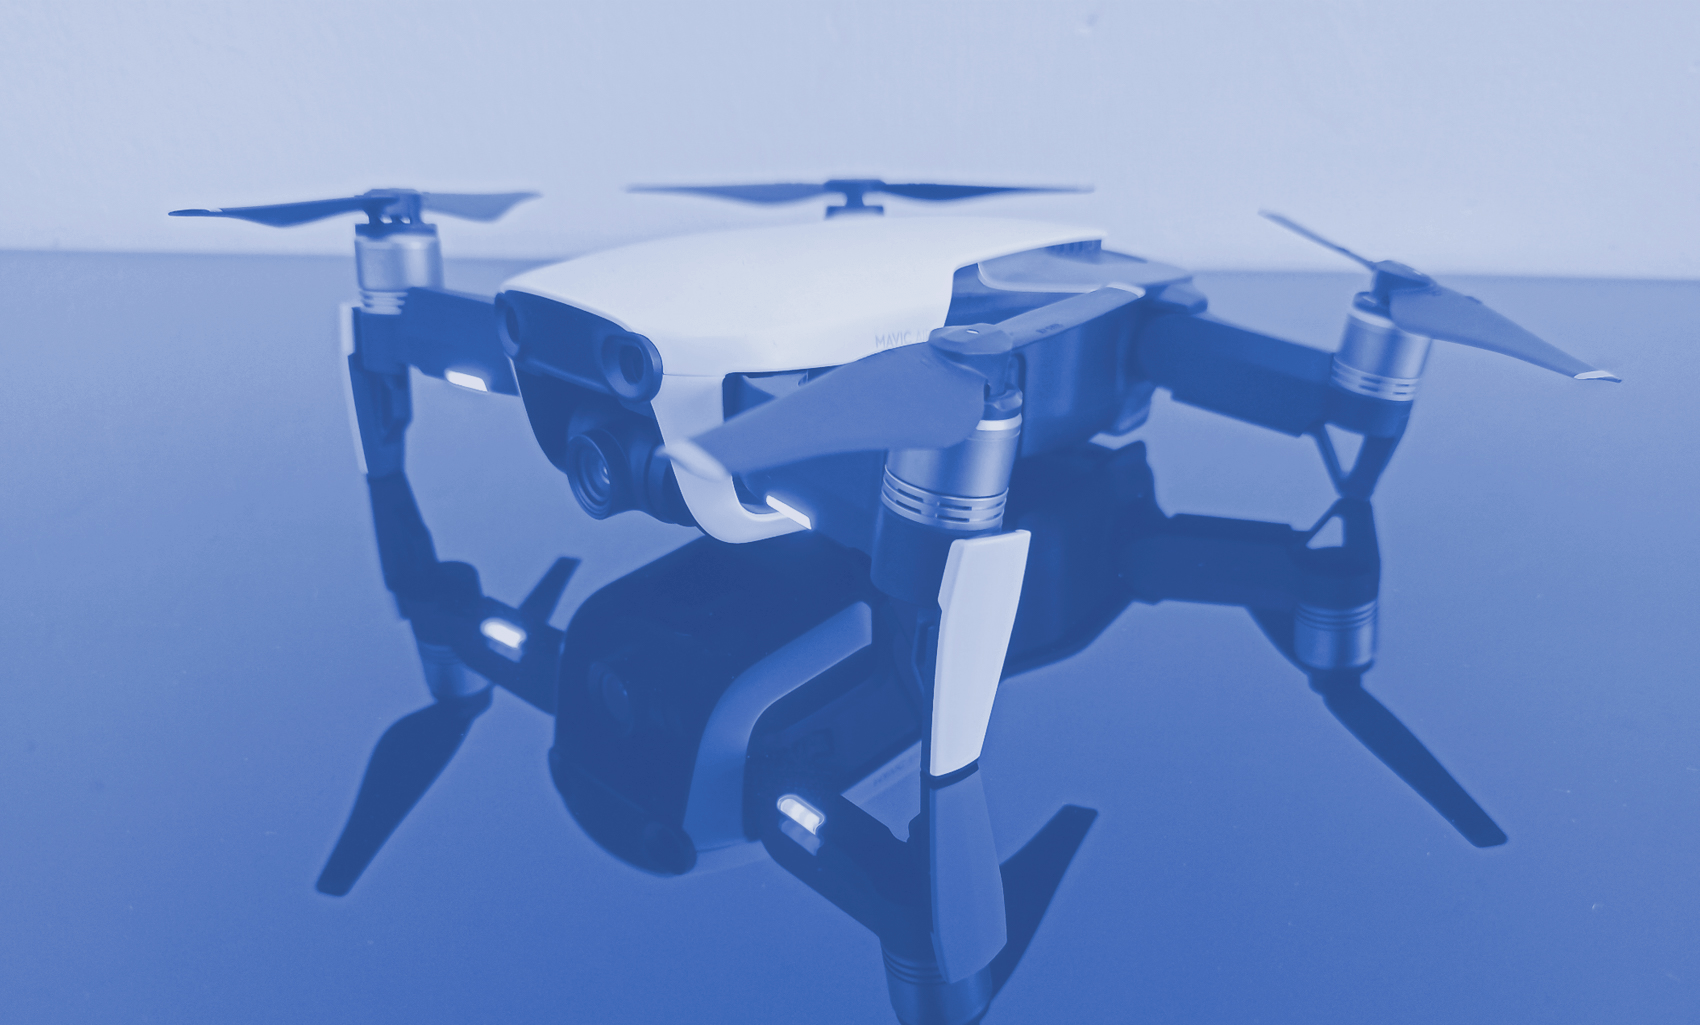 Imagen de fondo para el tema drones.